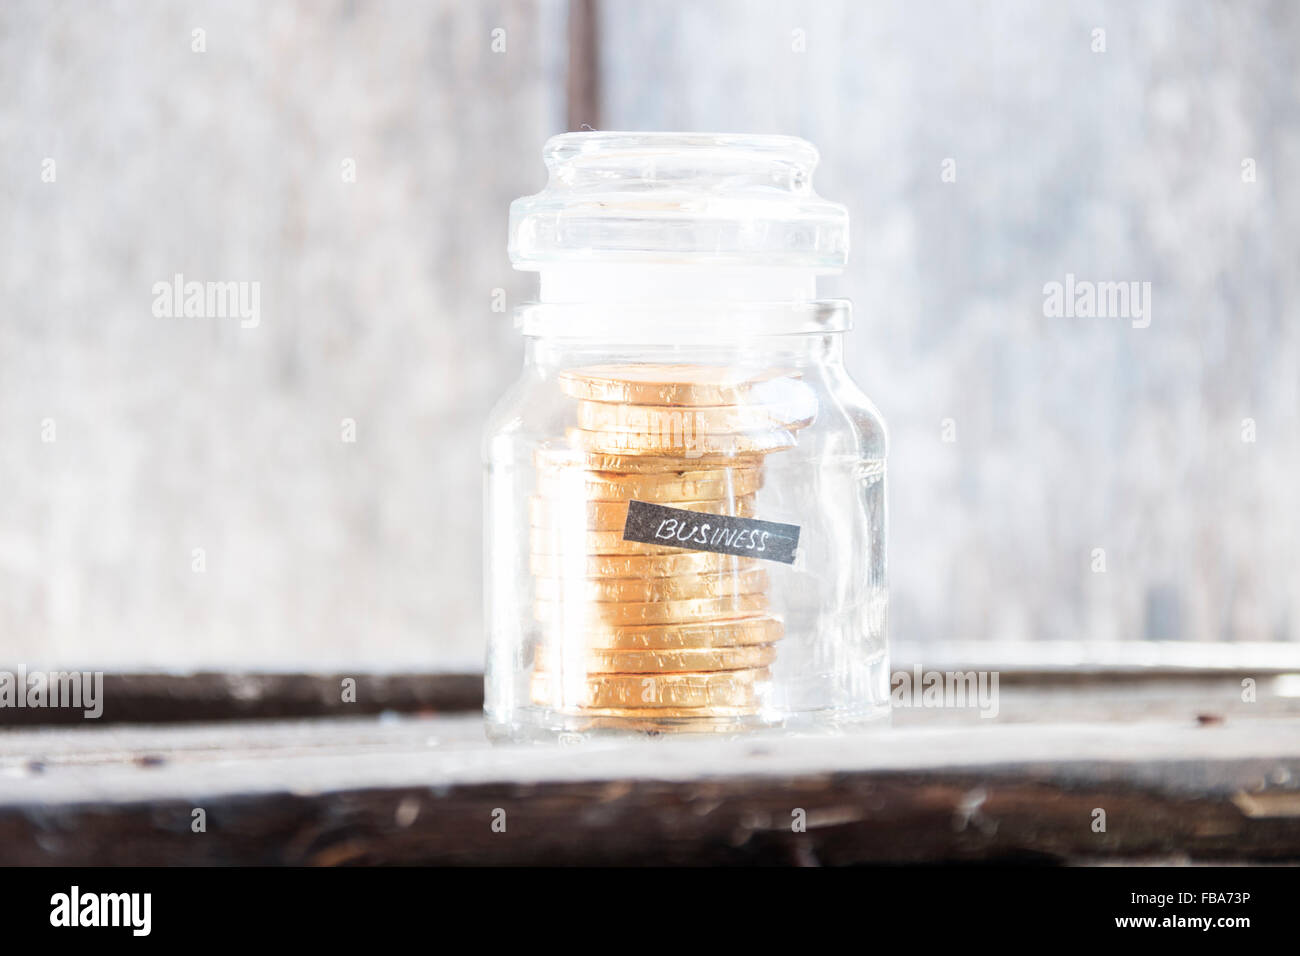 Testo aziendale e monete d'oro in una bottiglia di vetro Foto Stock